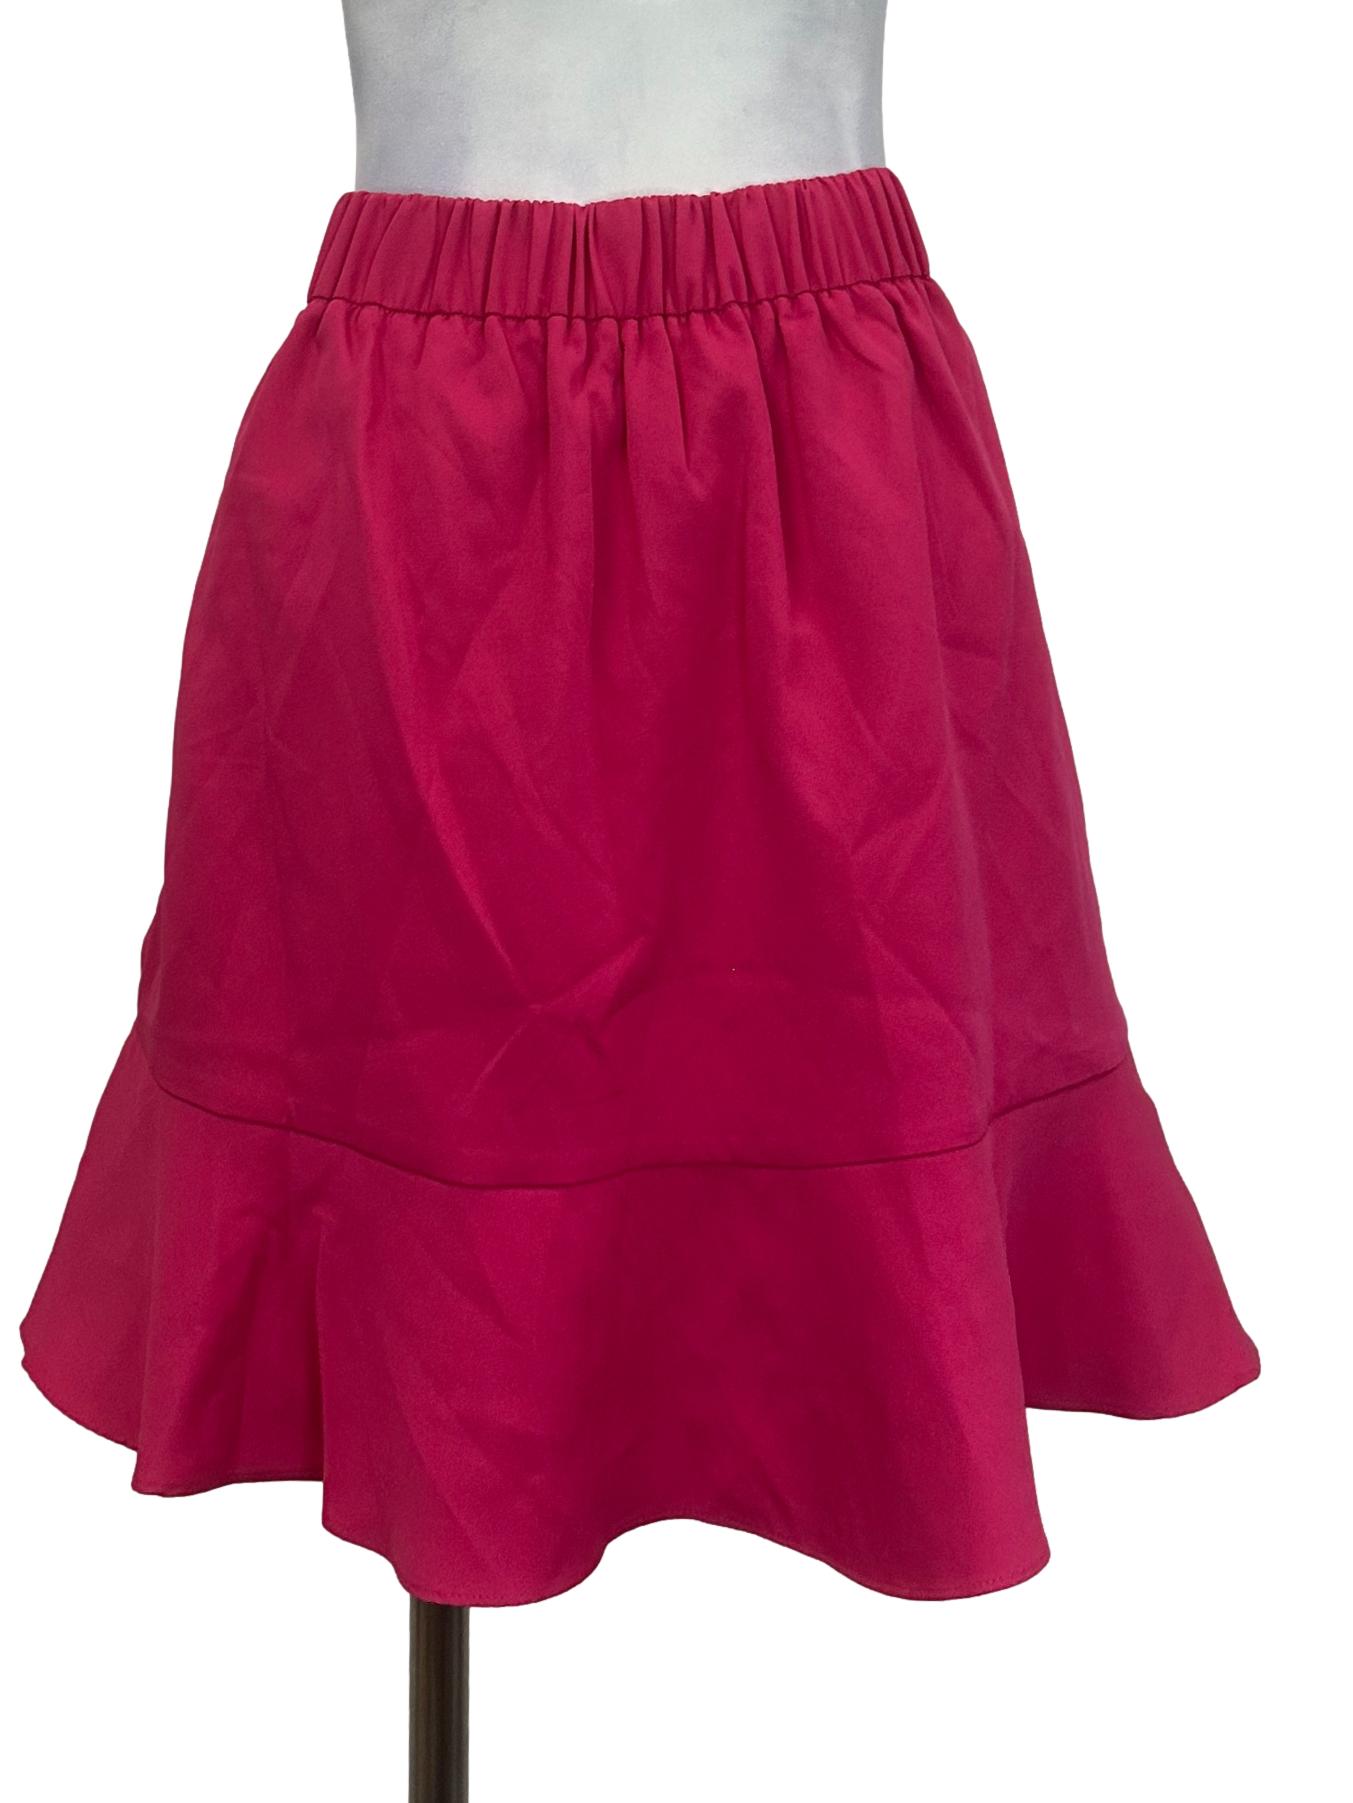 Hot Pink Button Skirt